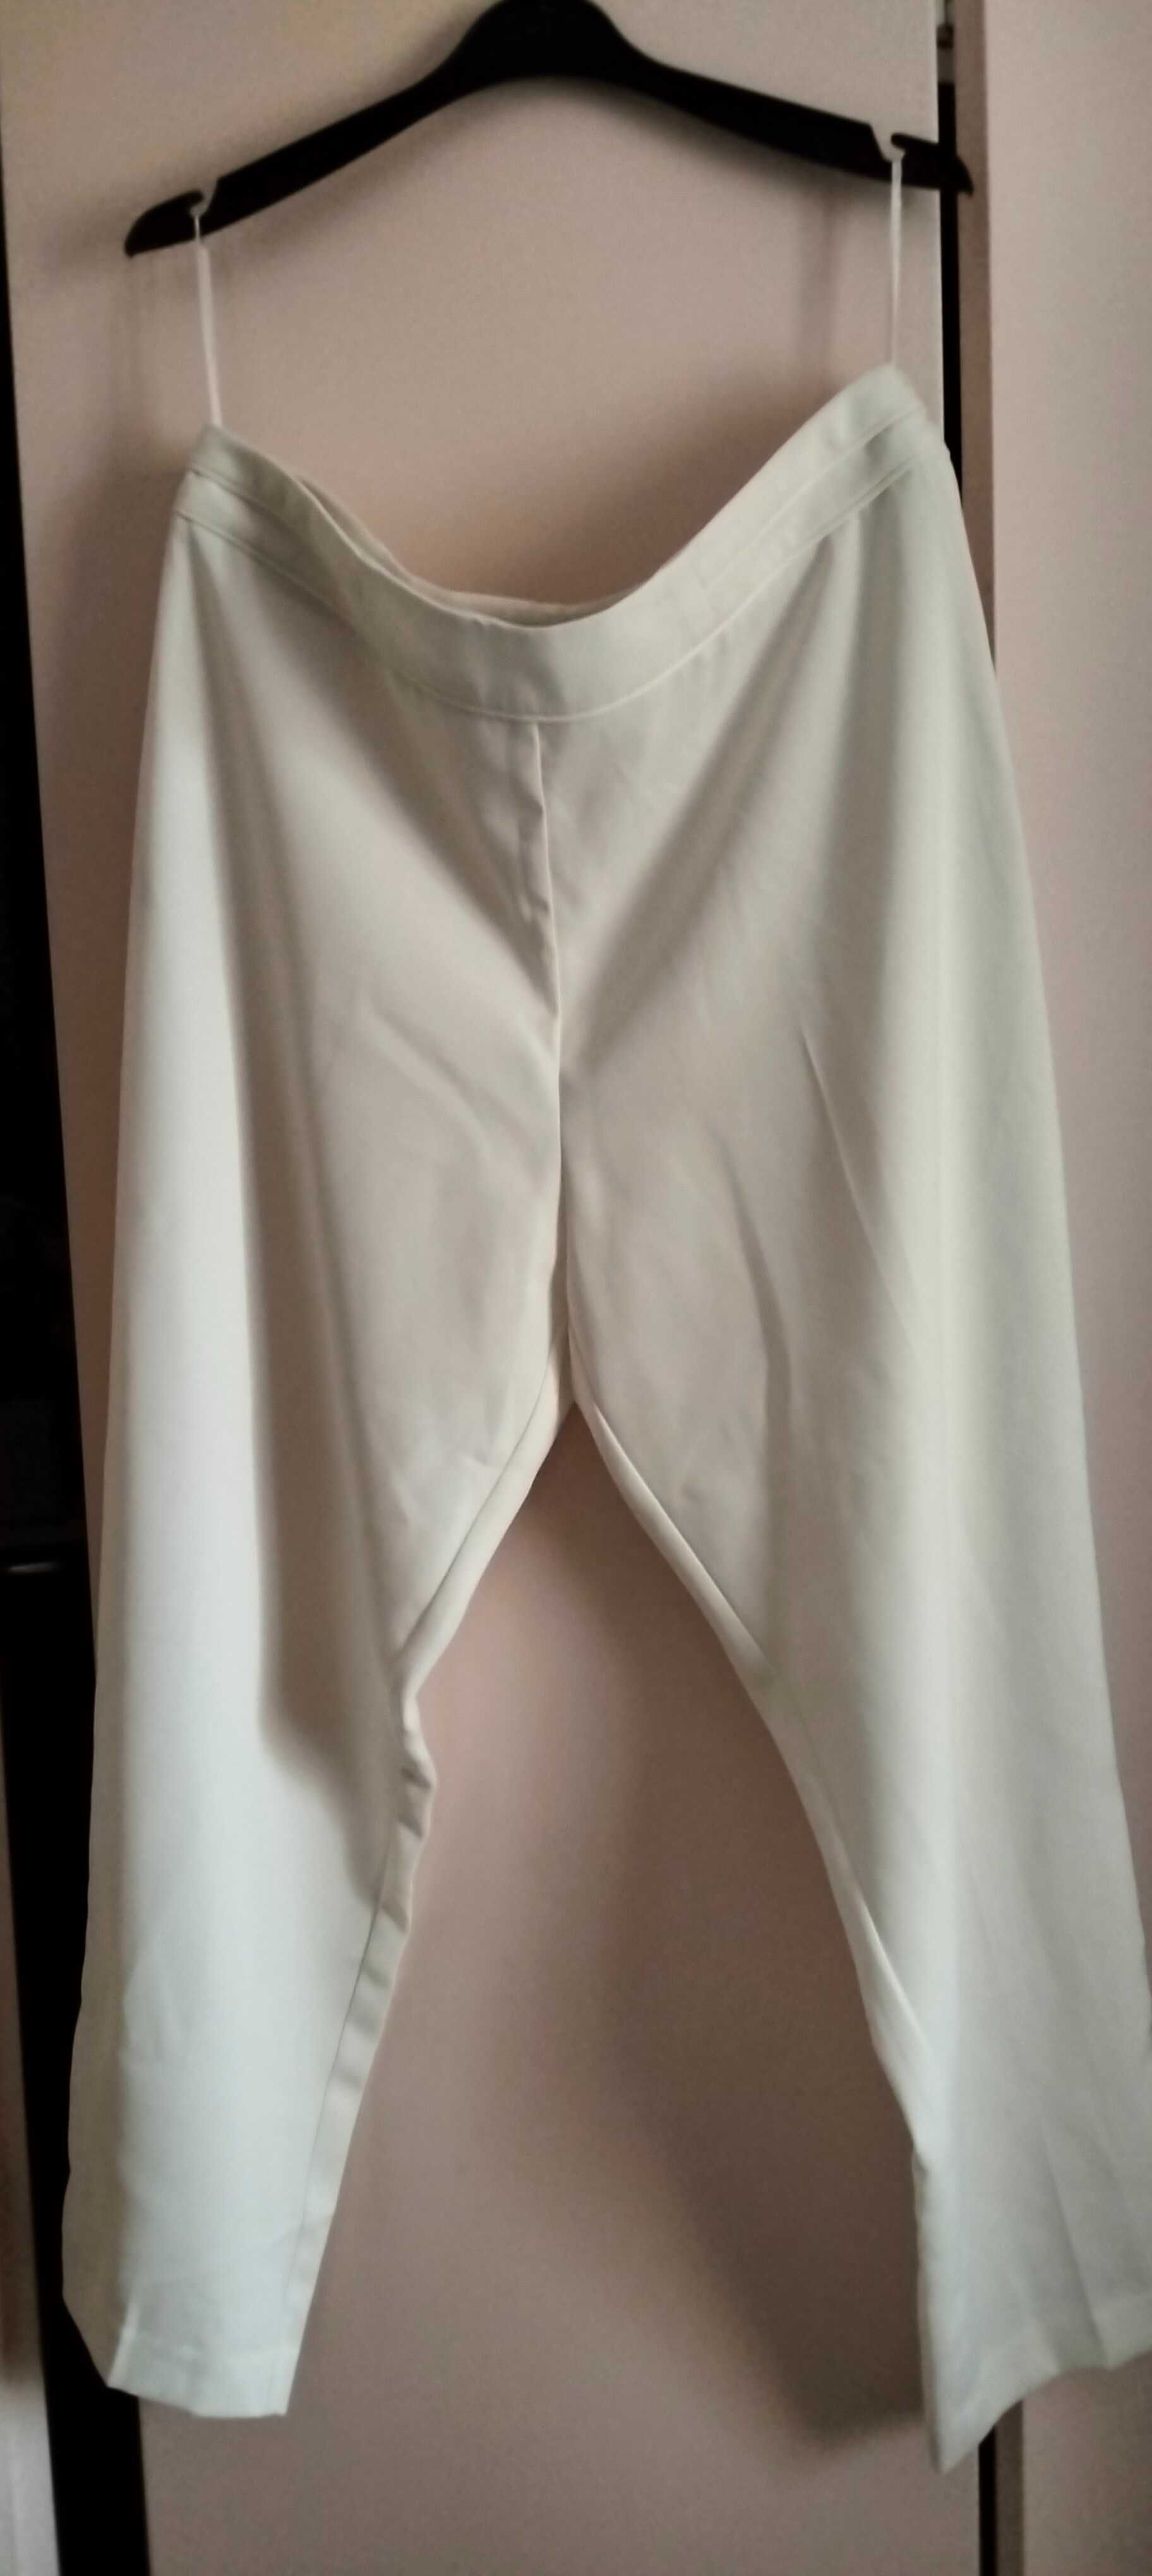 NOWE damskie eleganckie spodnie firmy Wallis Petite rozmiar 42